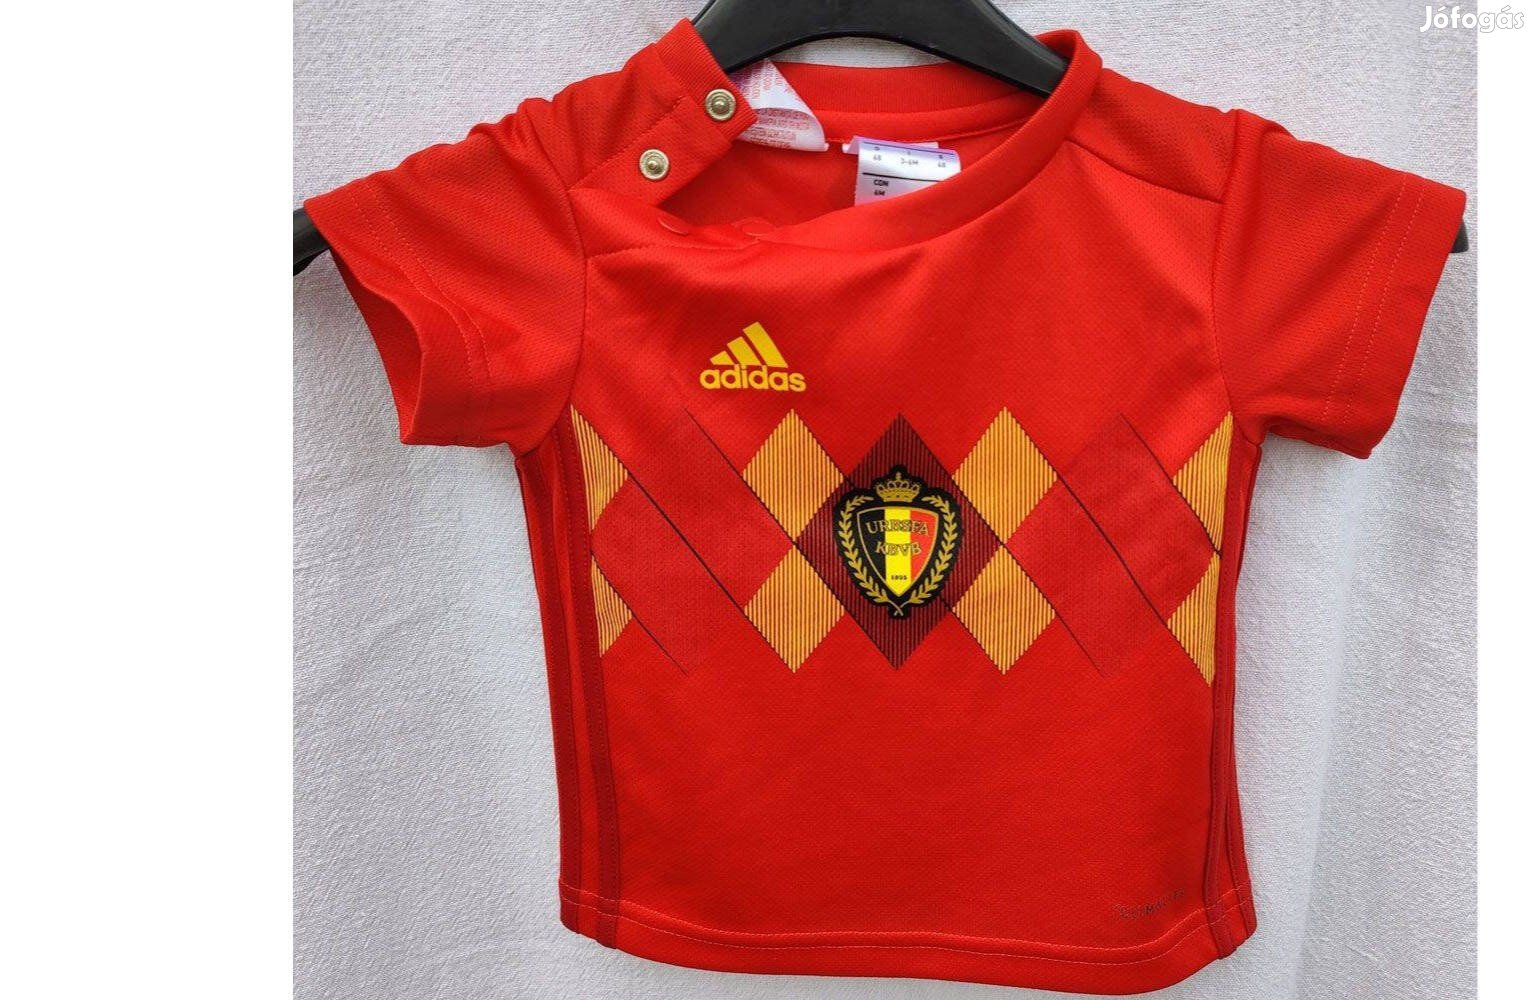 Belgium válogatott eredeti adidas baby mez (68-as)